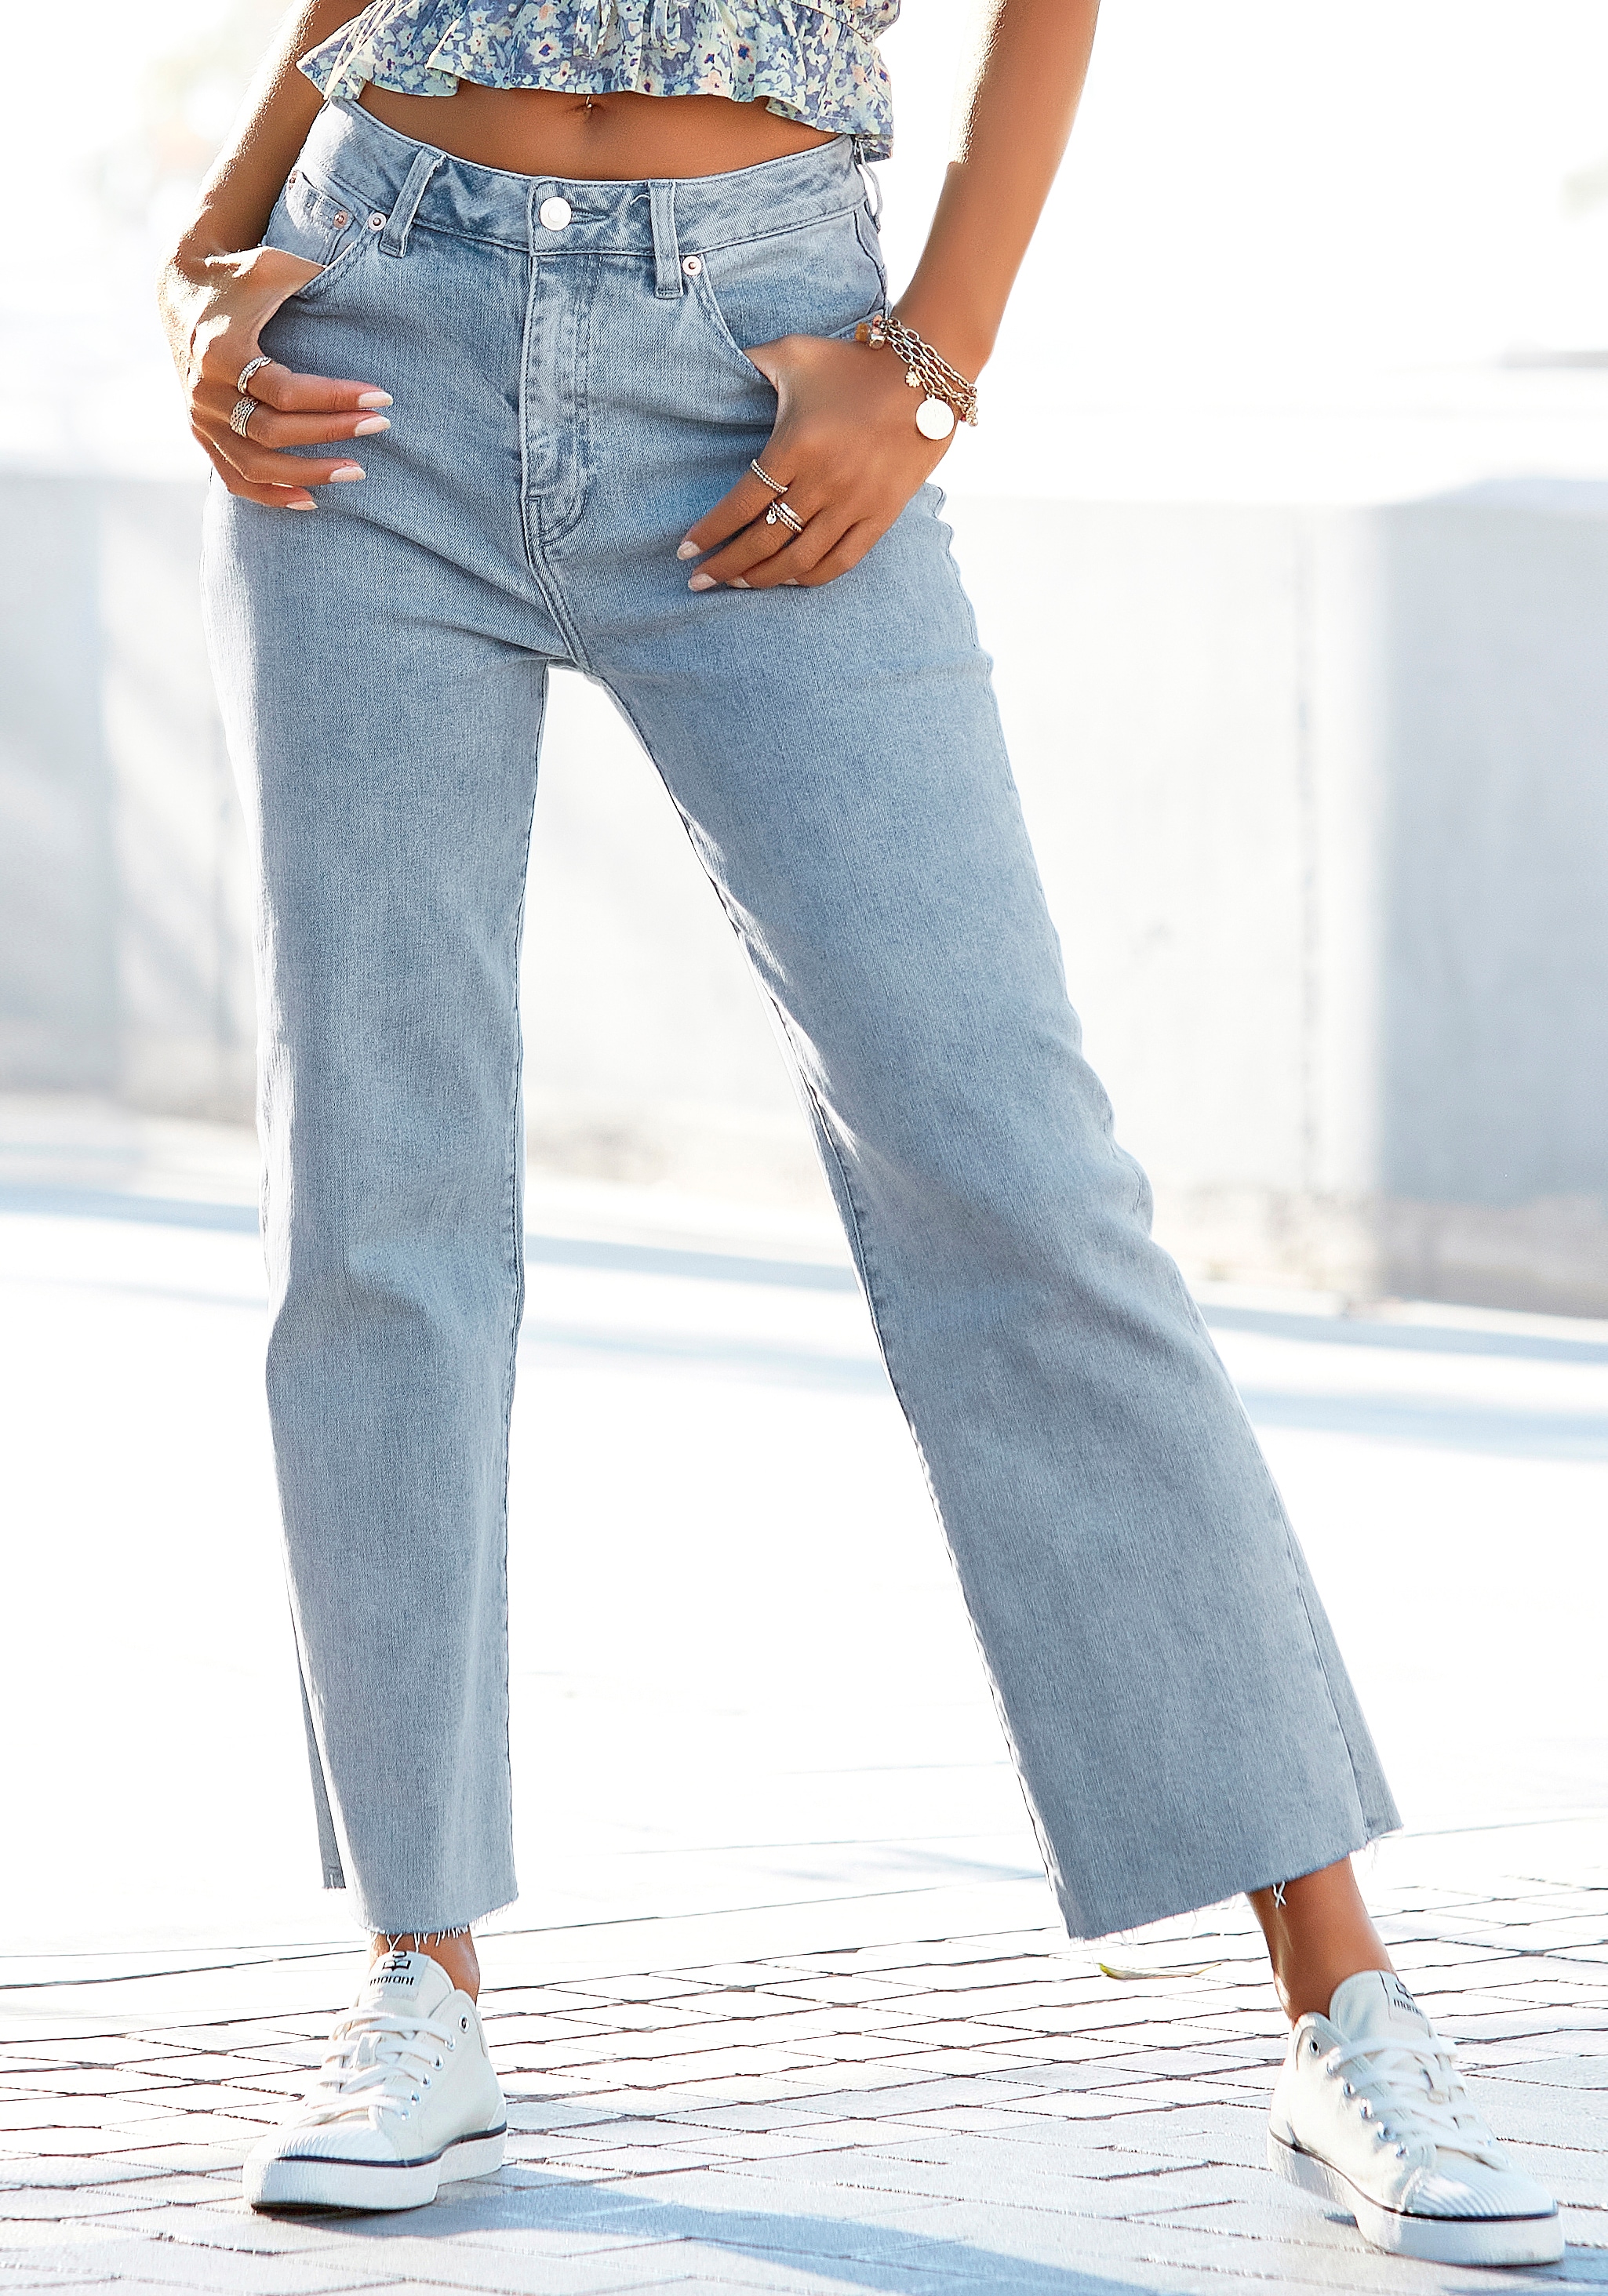 kapperszaak Identificeren honing Damen-Jeans in Langgrößen online kaufen | Schöne Jeans bei OTTO